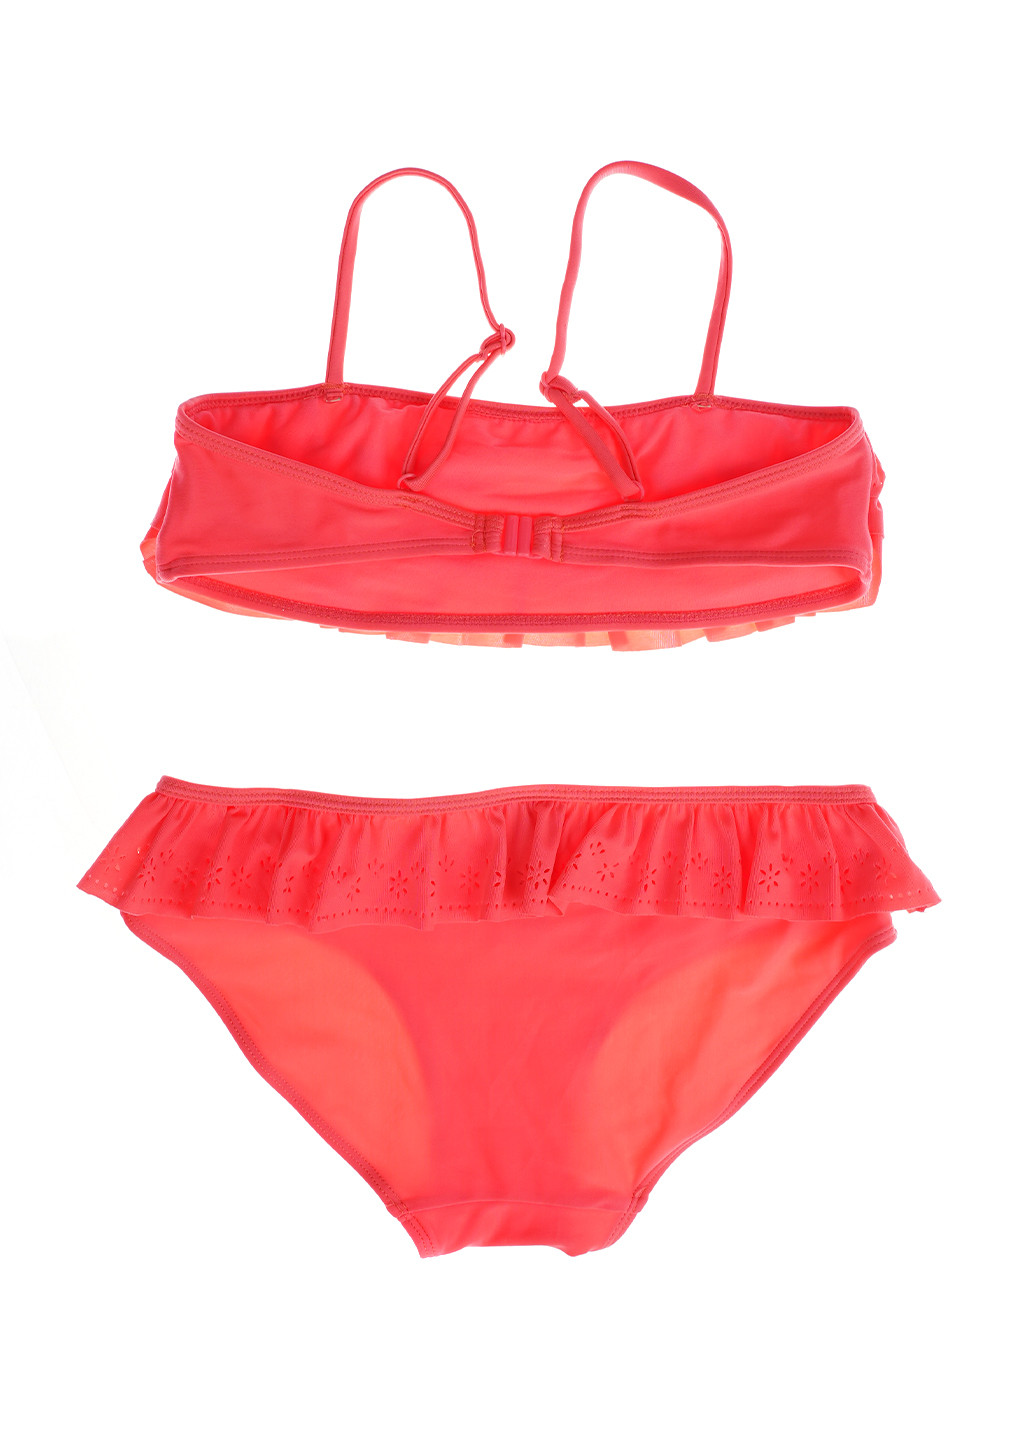 Кислотно-розовый летний купальник (топ, трусы) раздельный, топ H&M